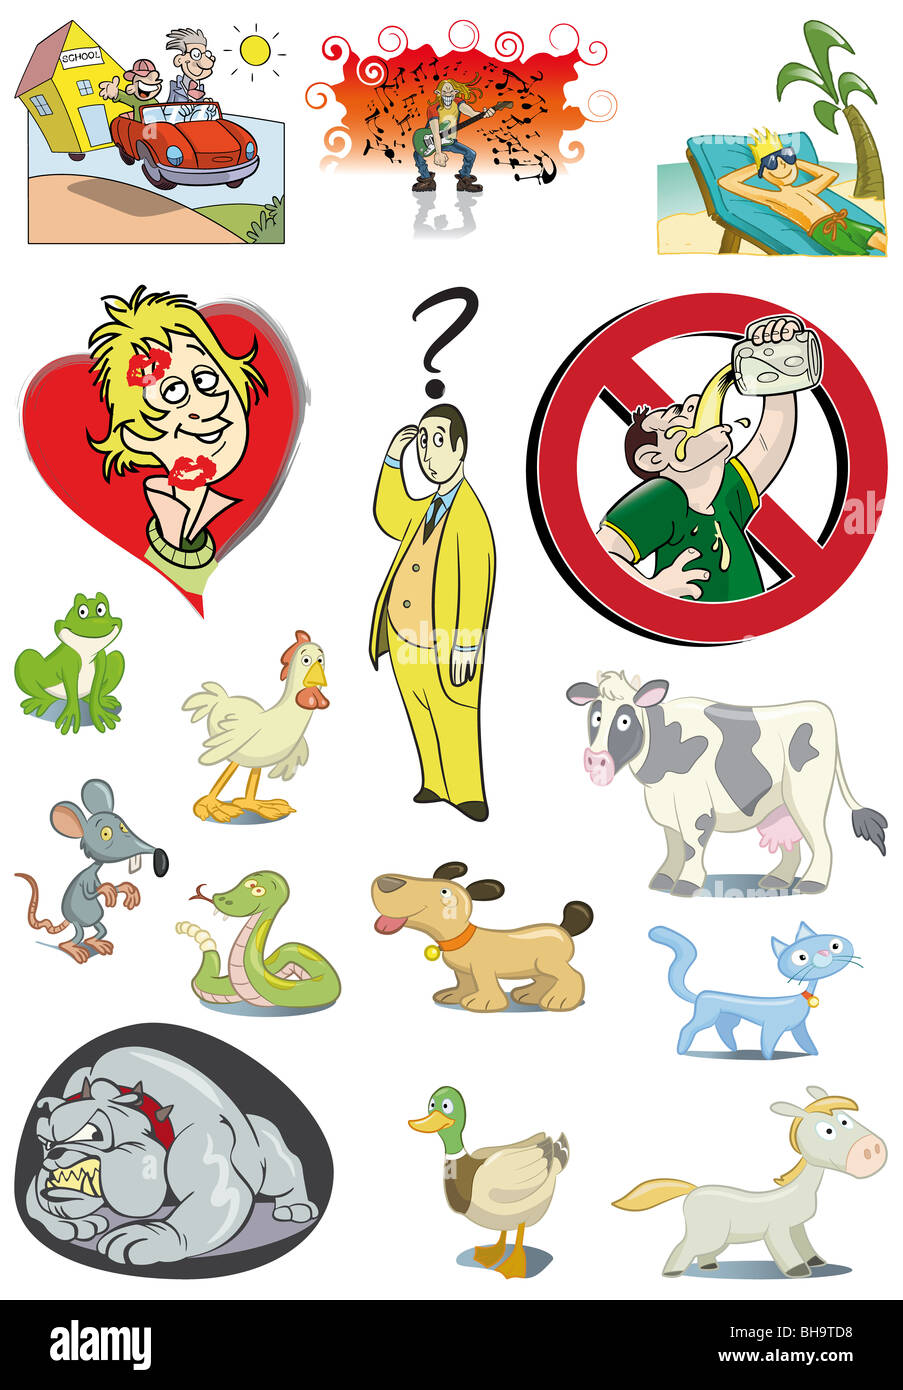 Variété d'animaux et personnages de dessins animés Banque D'Images